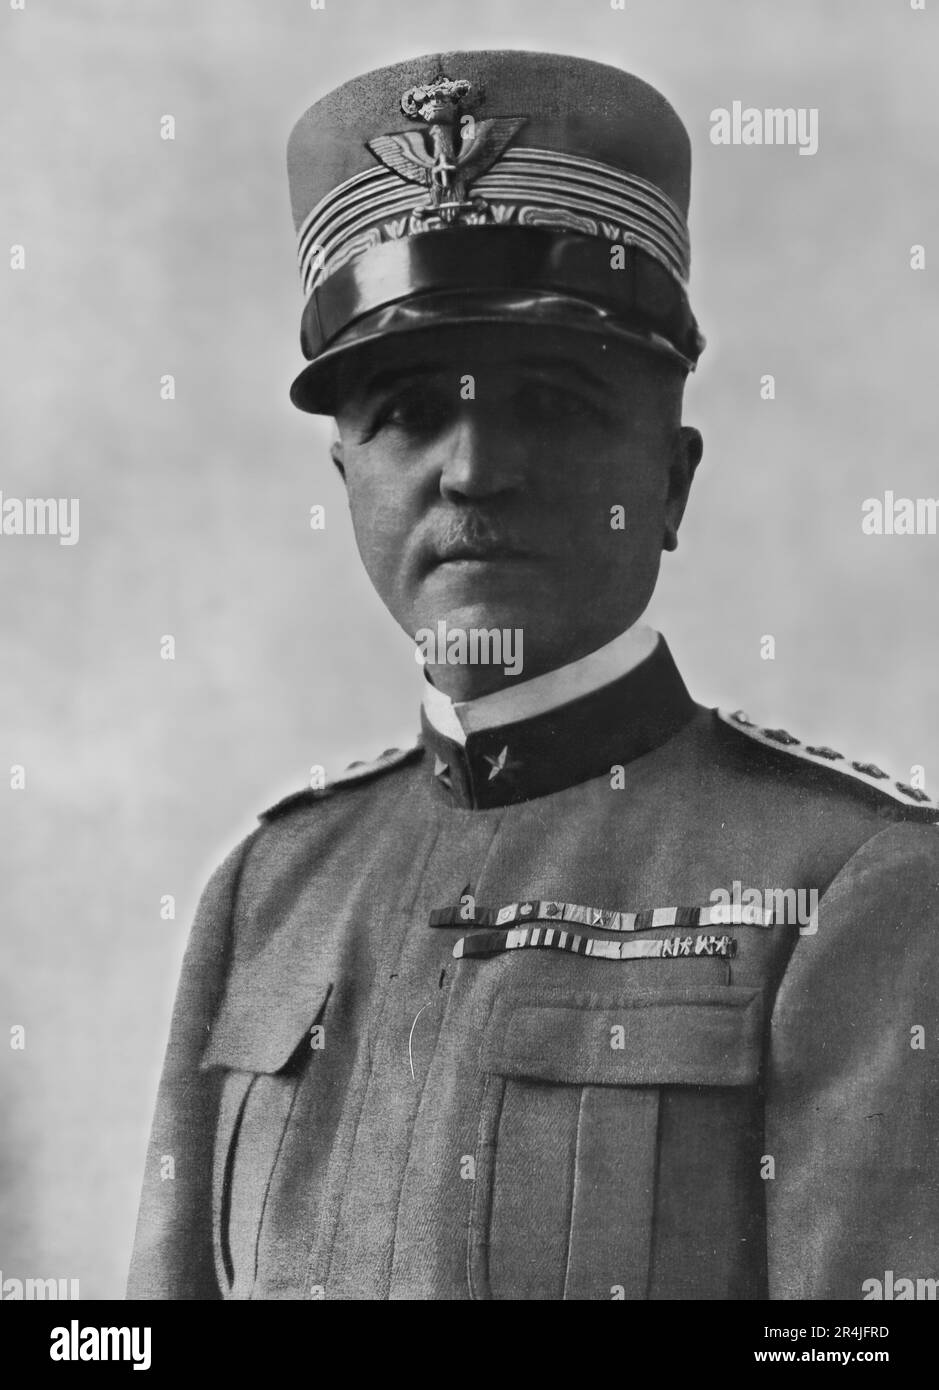 Pietro Badoglio politicien et militaire italien, après le dépôt de Mussolini, il a mené le gouvernement italien vers l'armistice de 1943 Banque D'Images